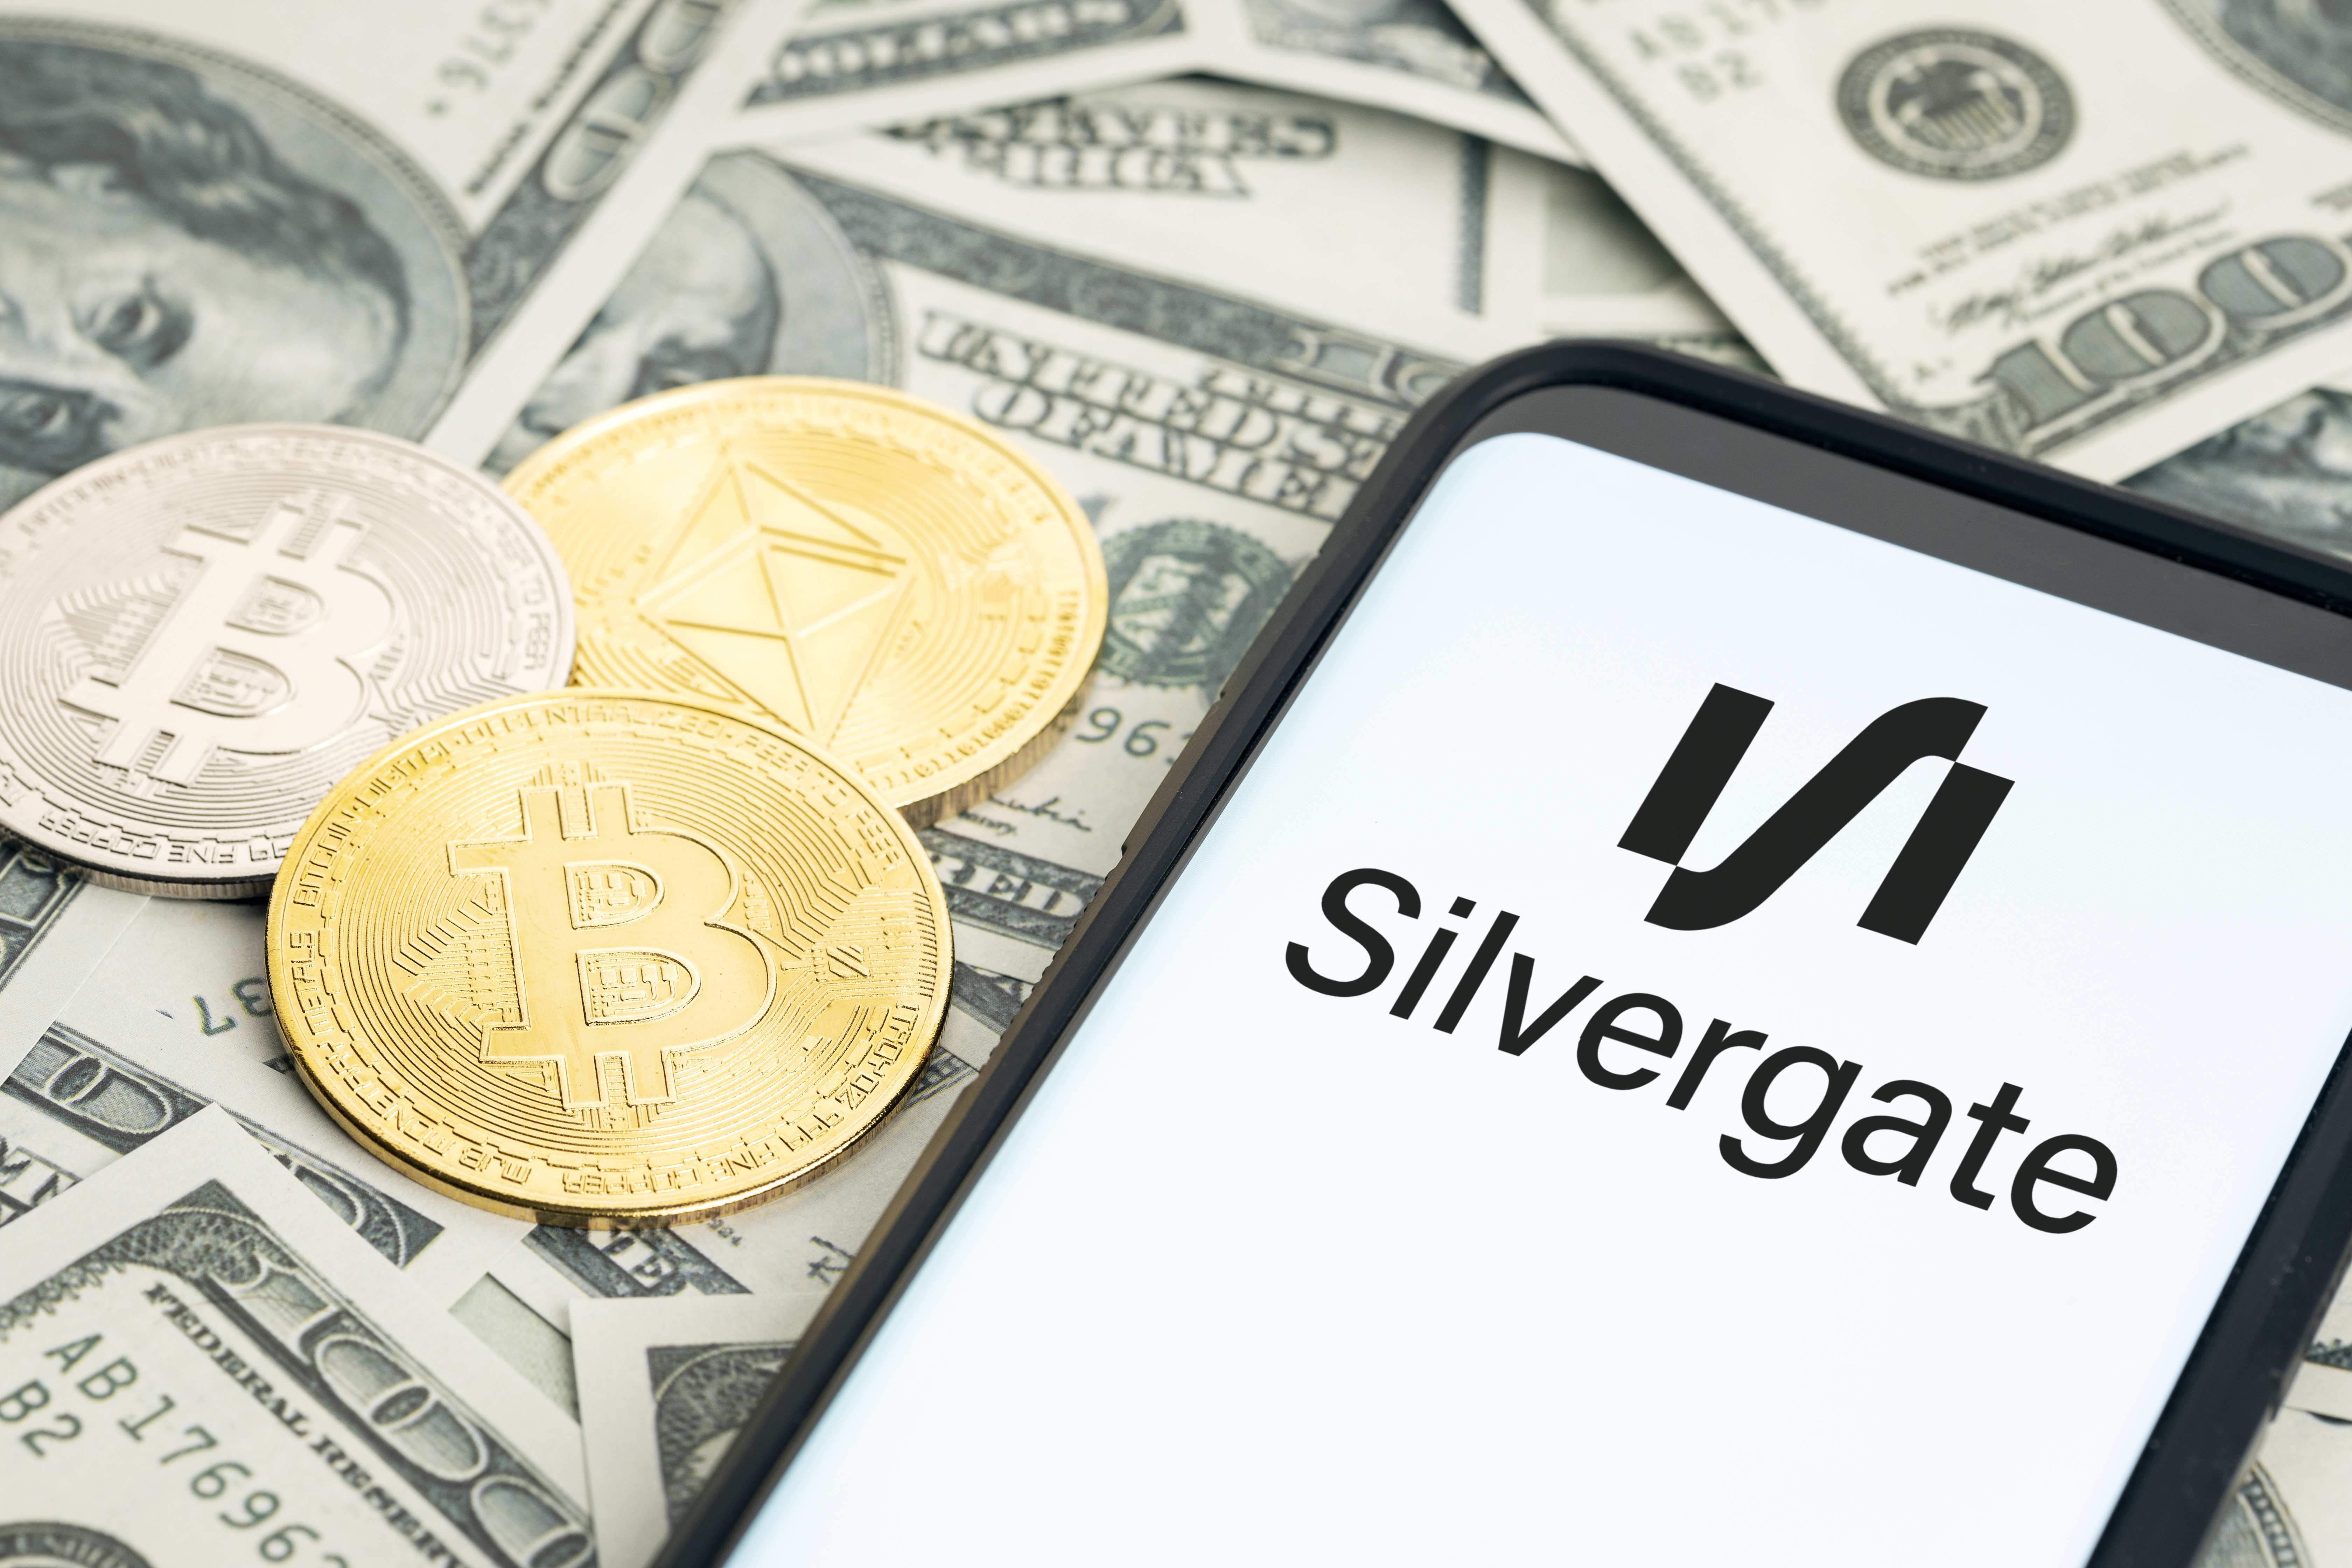 Seneste Nyt: Den kryptovenlige Silvergate Bank foretager likvidation - Tilbageskridt for udbredelse af krypto?